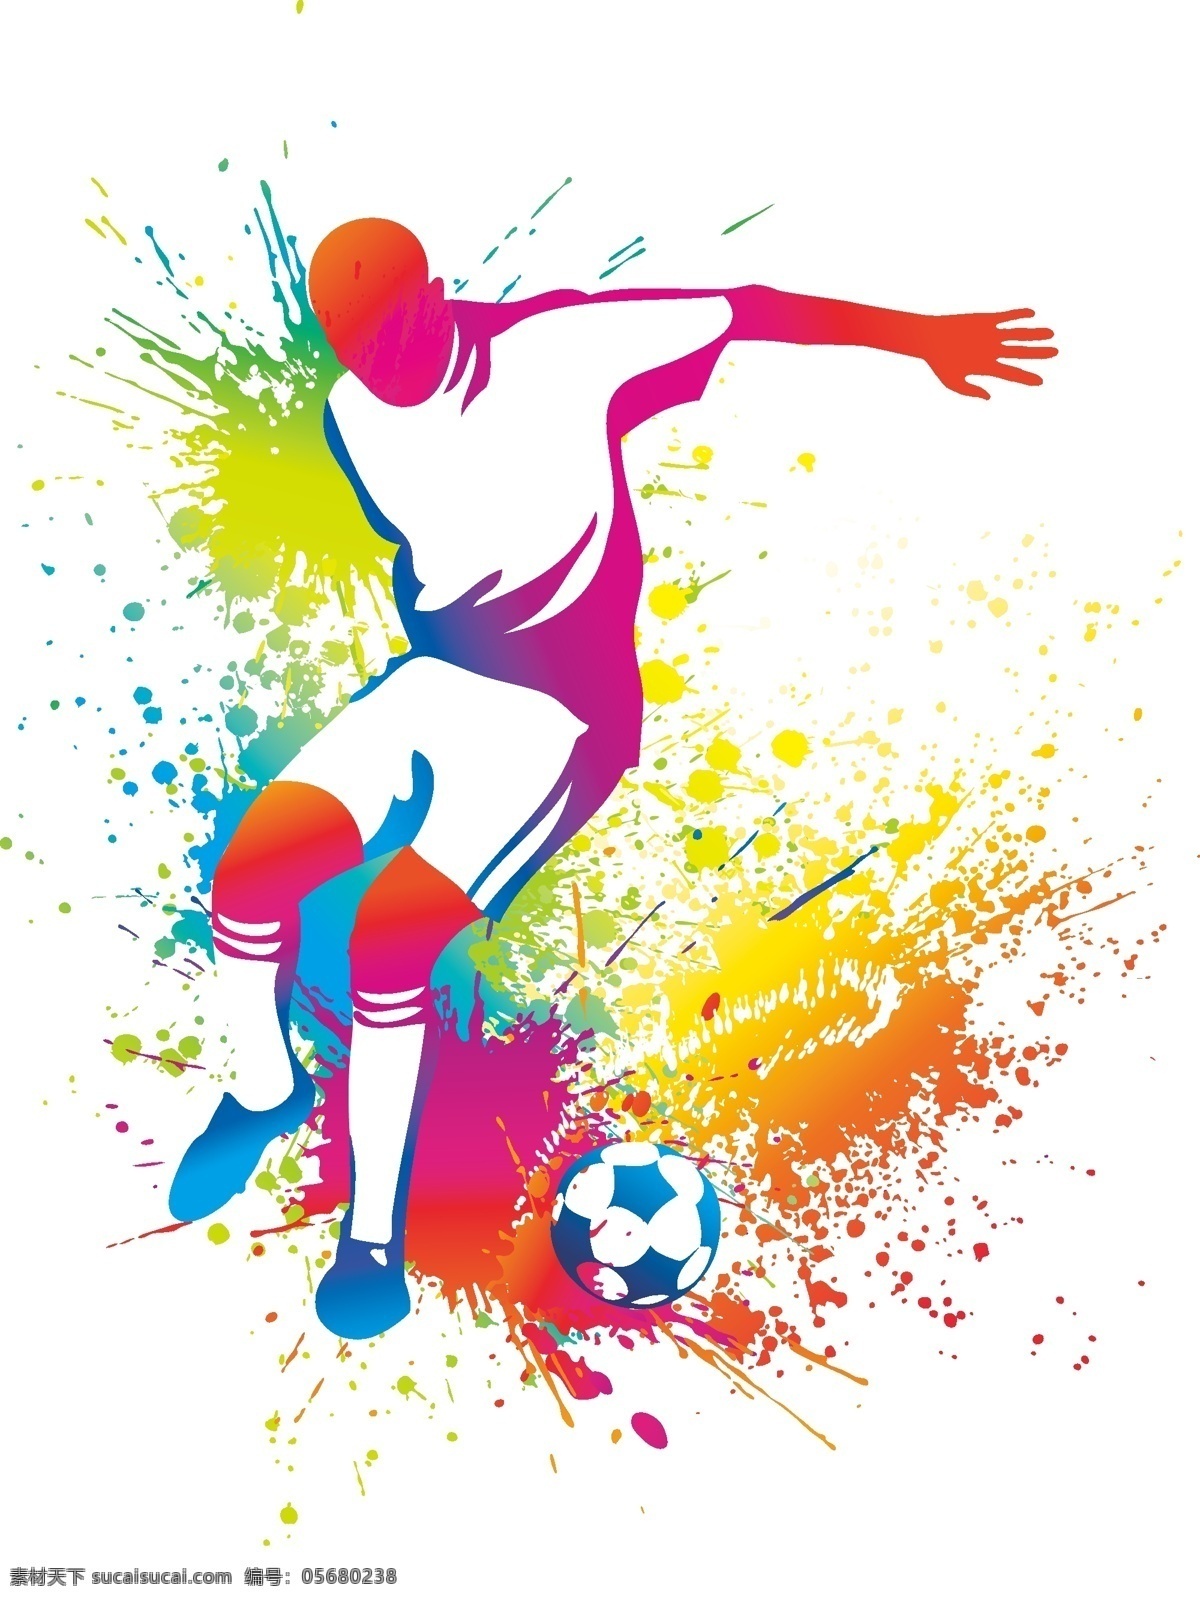 足球运动 足球 运动 打球 地球 体育 比赛 卡通足球 世界被 踢足球 运动员 运动员剪影 足球剪影 生活百科 体育用品